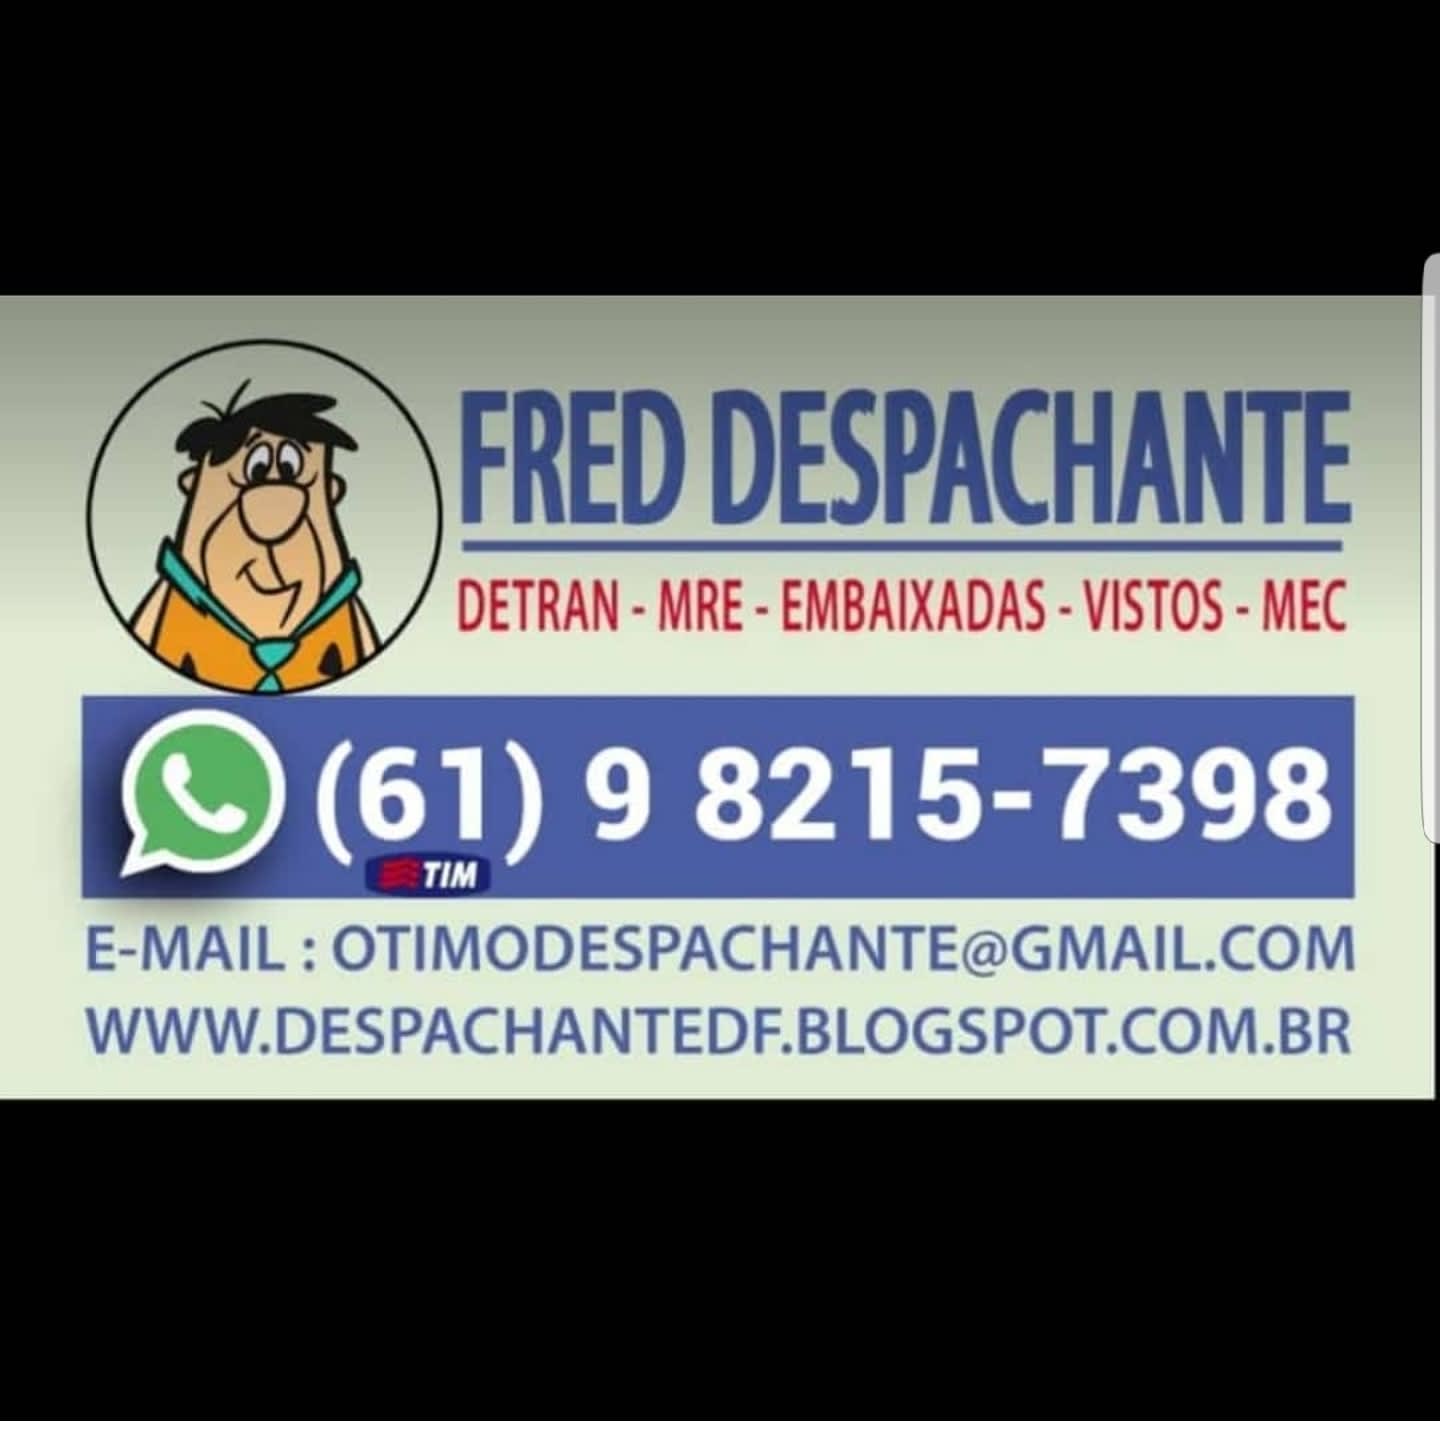 Fred Despachante